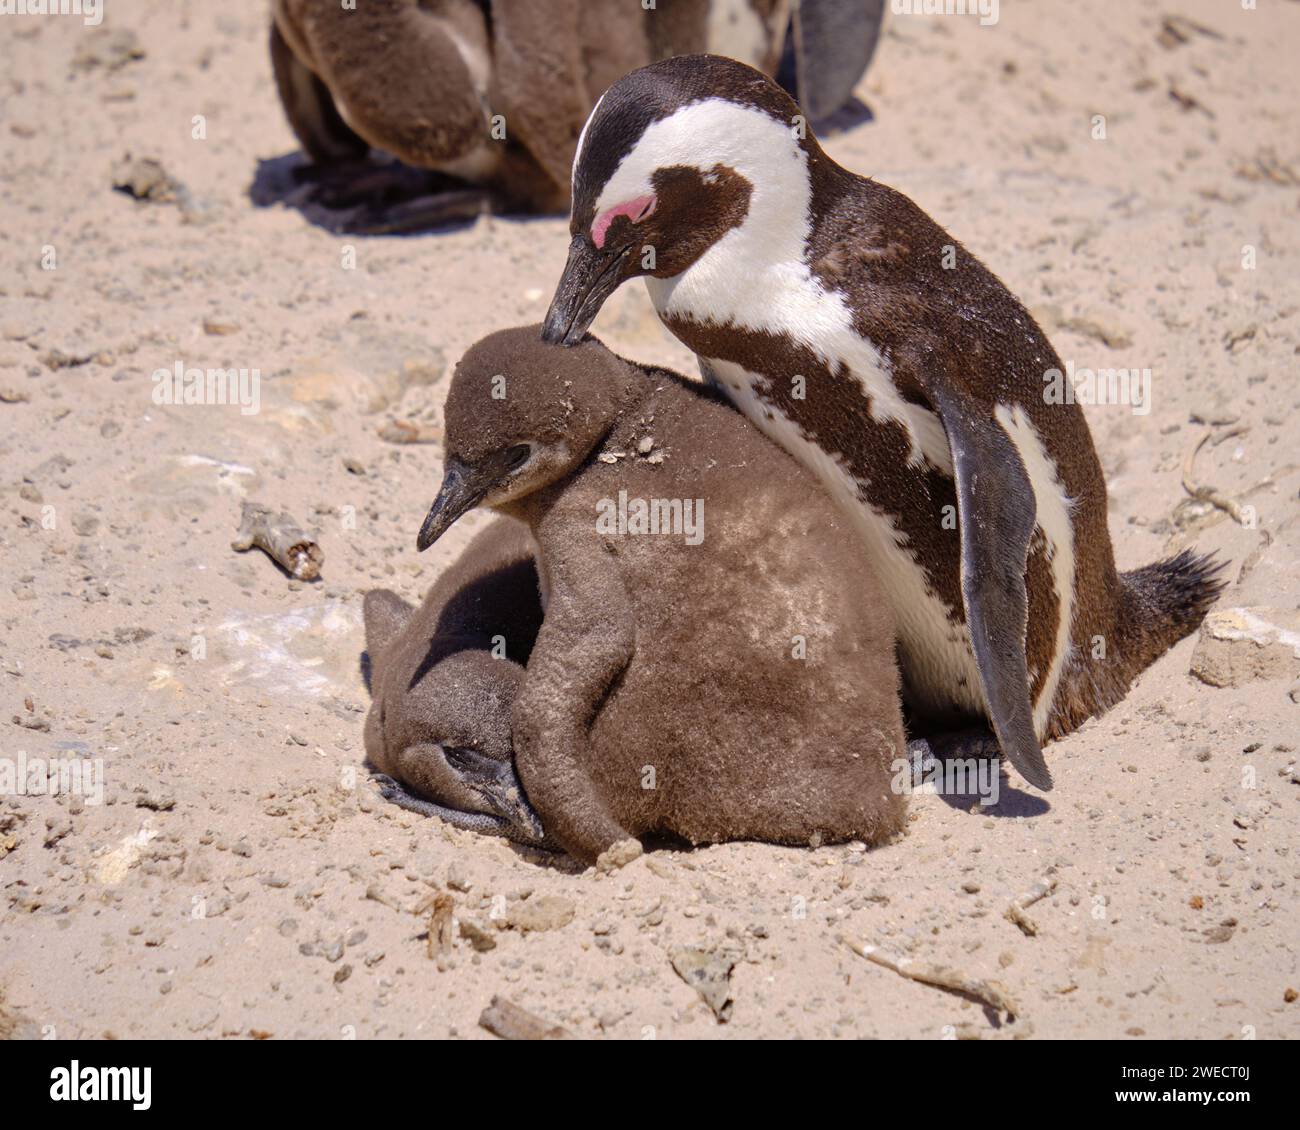 Pingouin africain adulte préendant la couette d'un poussin juvénile sous ses soins. Capturez sur une plage ensoleillée en Afrique du Sud Banque D'Images